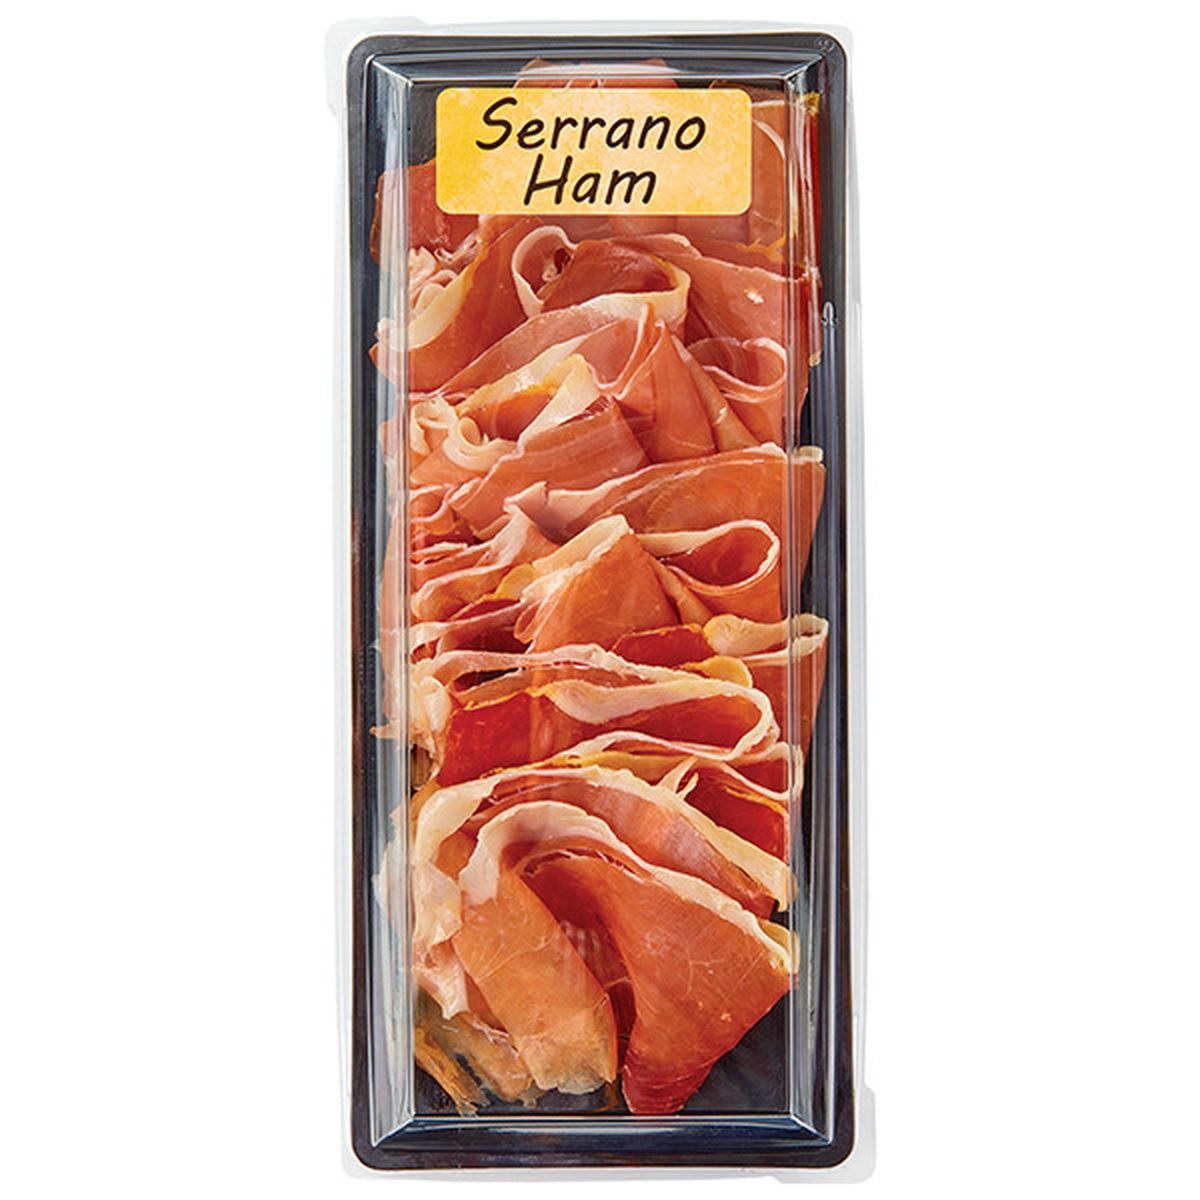 Calories in Serrano Ham